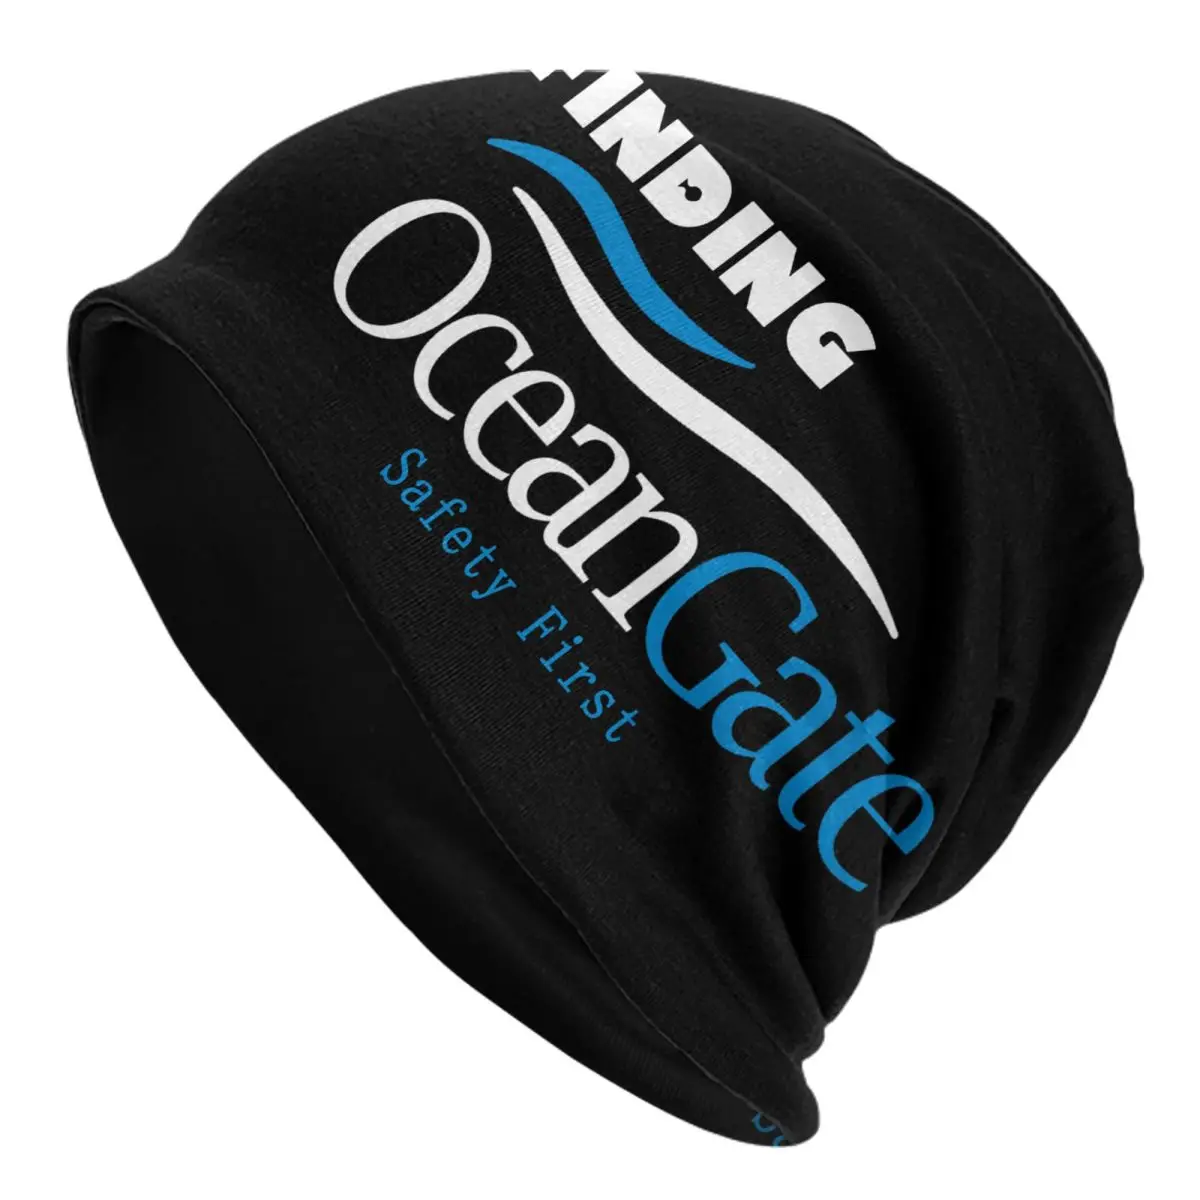 Забавная находка для мужчин, Шапочка OceanGate, товары с черепами, Уникальный дизайн, Многофункциональная вязаная шапка Ocean Gate Изображение 0